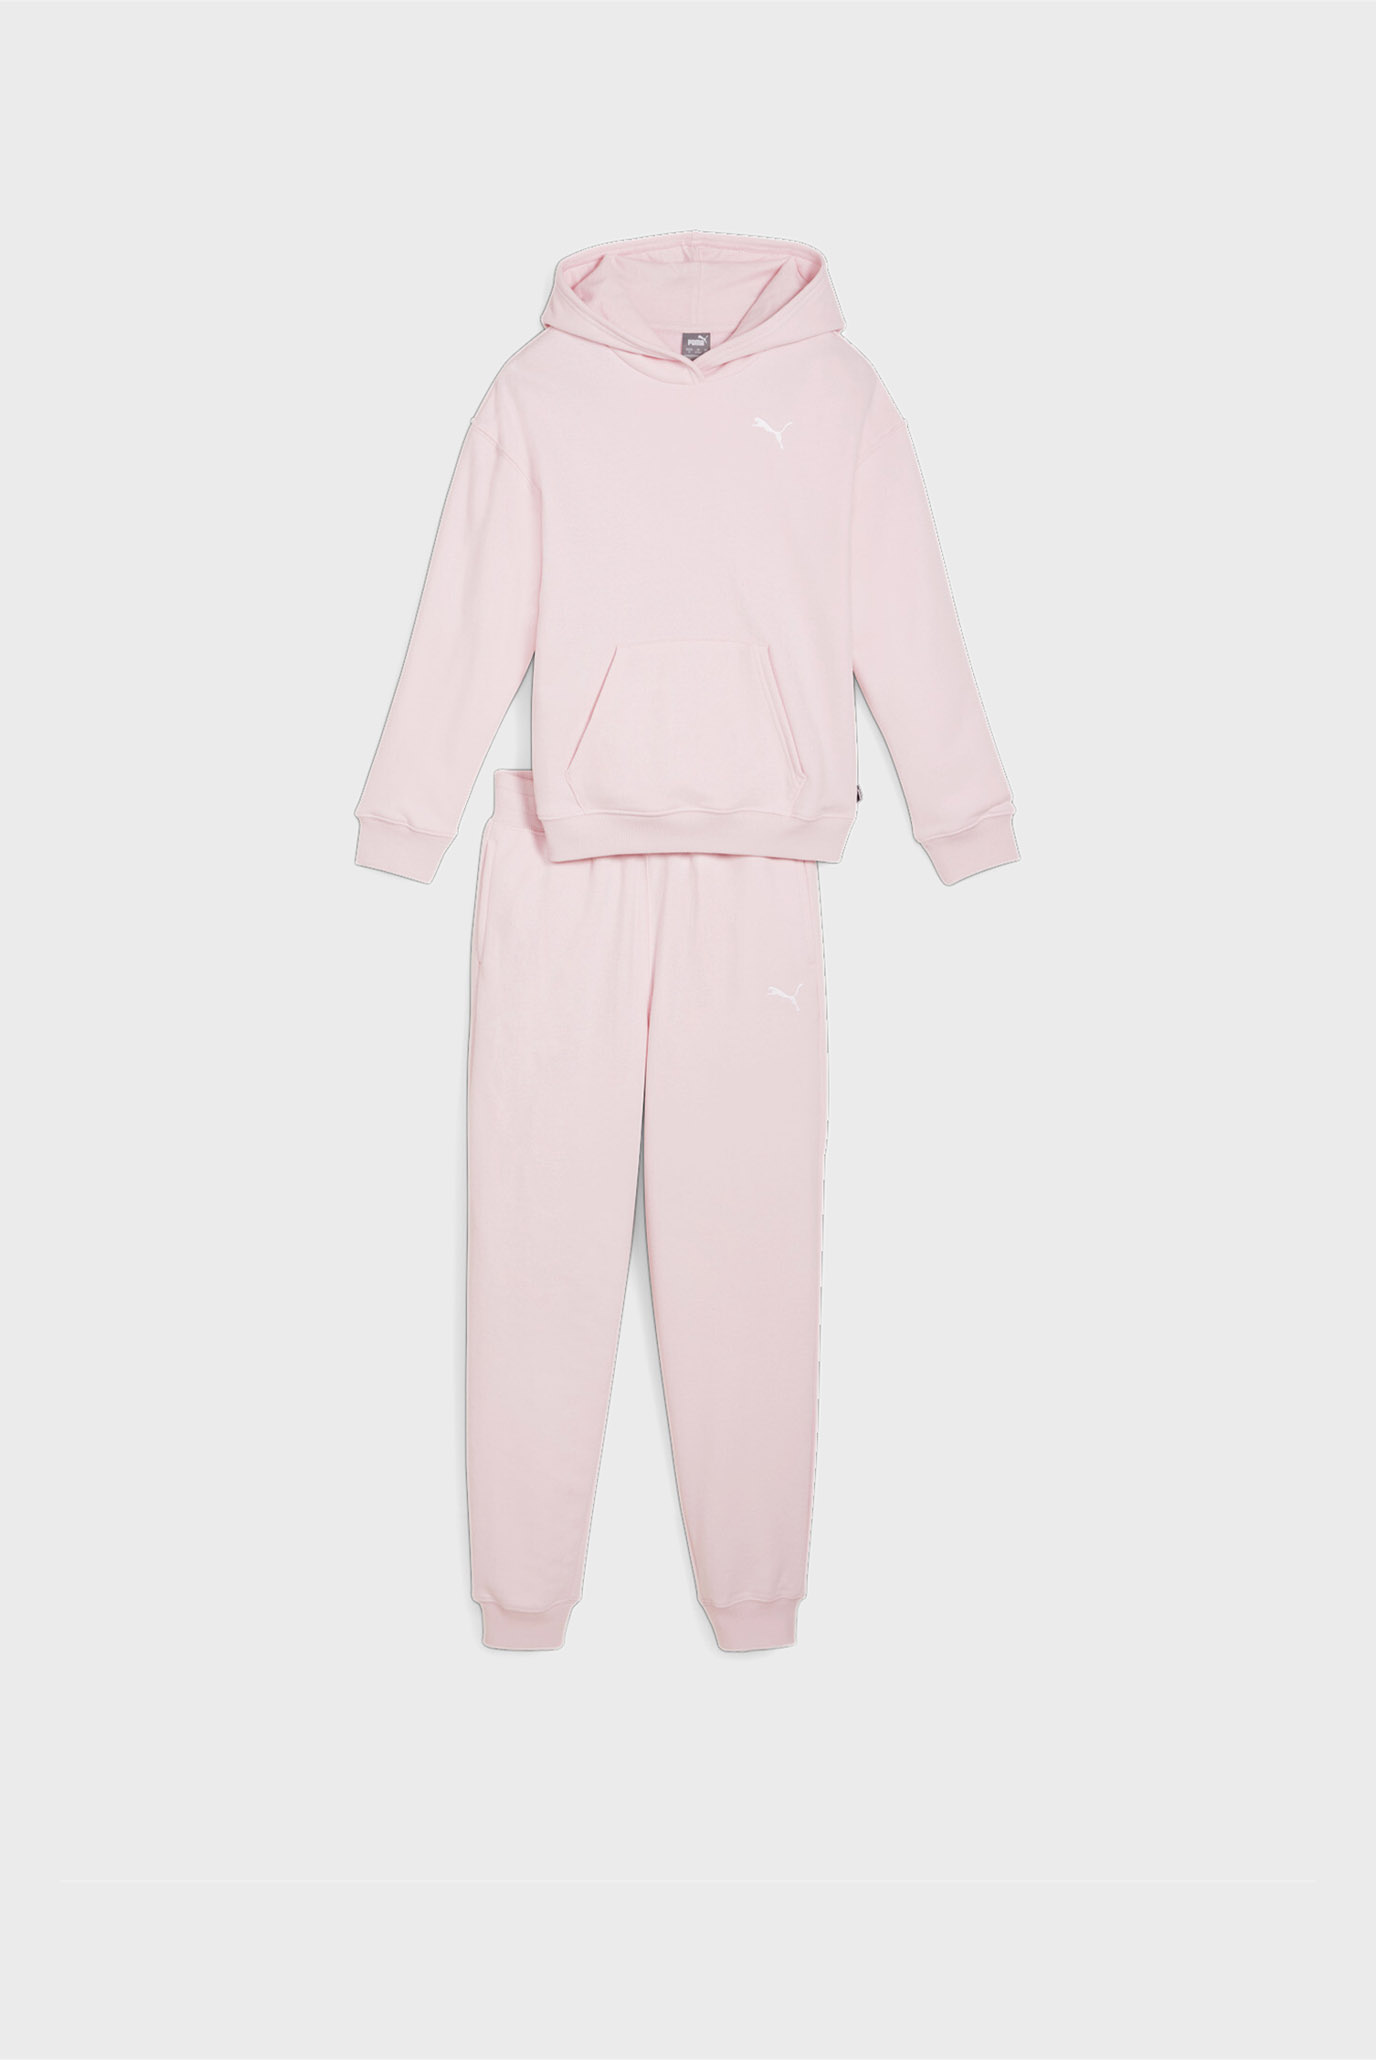 Дитячий рожевий спортивний костюм (худі, штани) Girls' Loungewear Suit 1